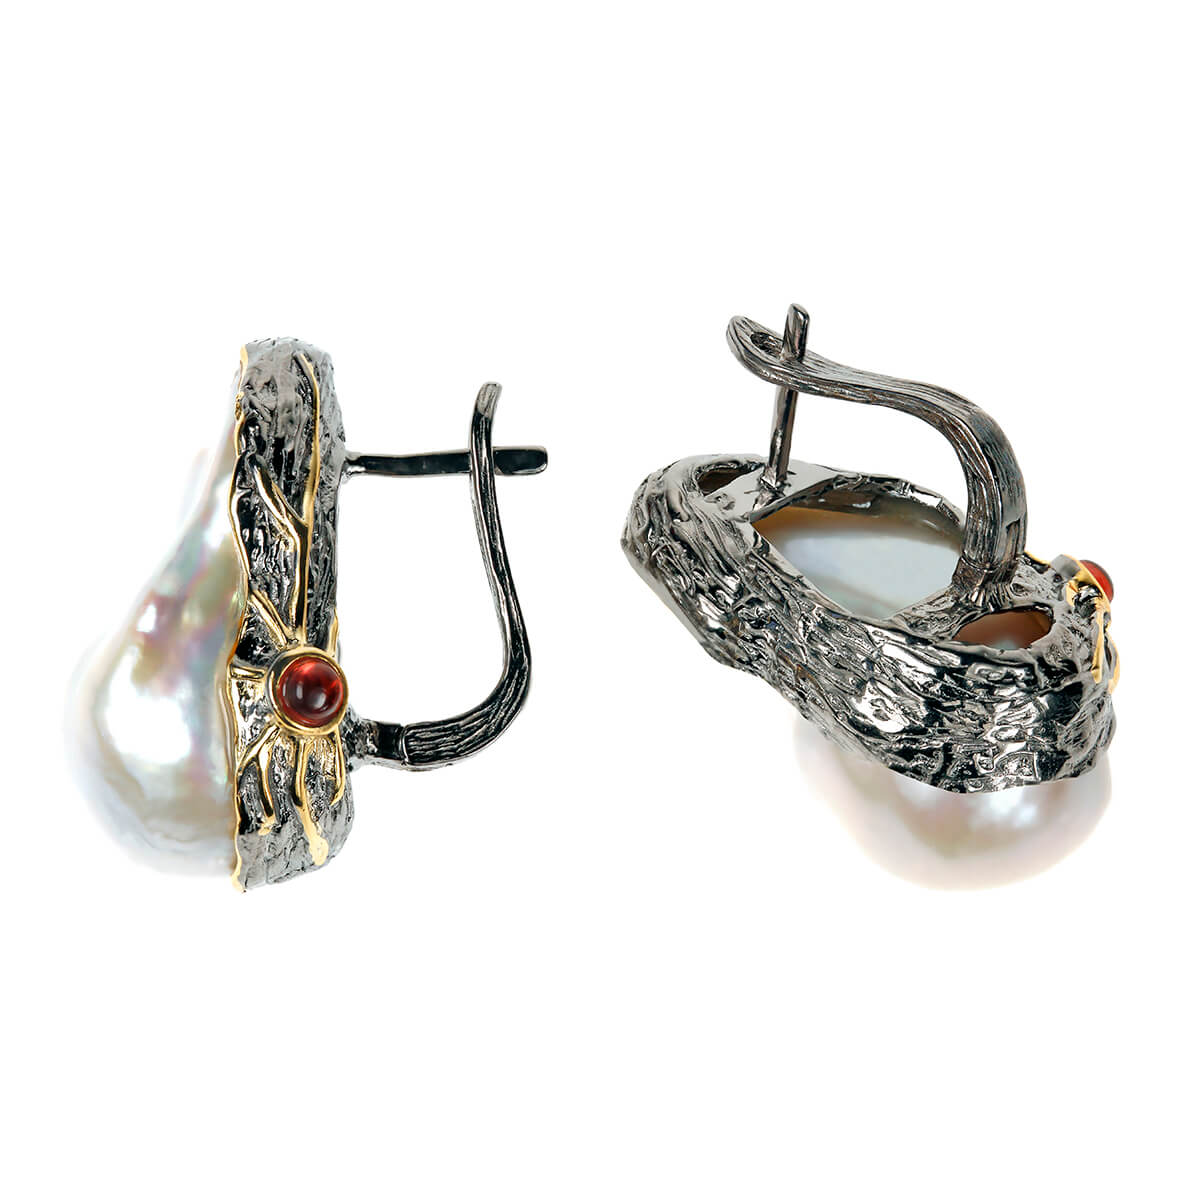 Geetu earrings